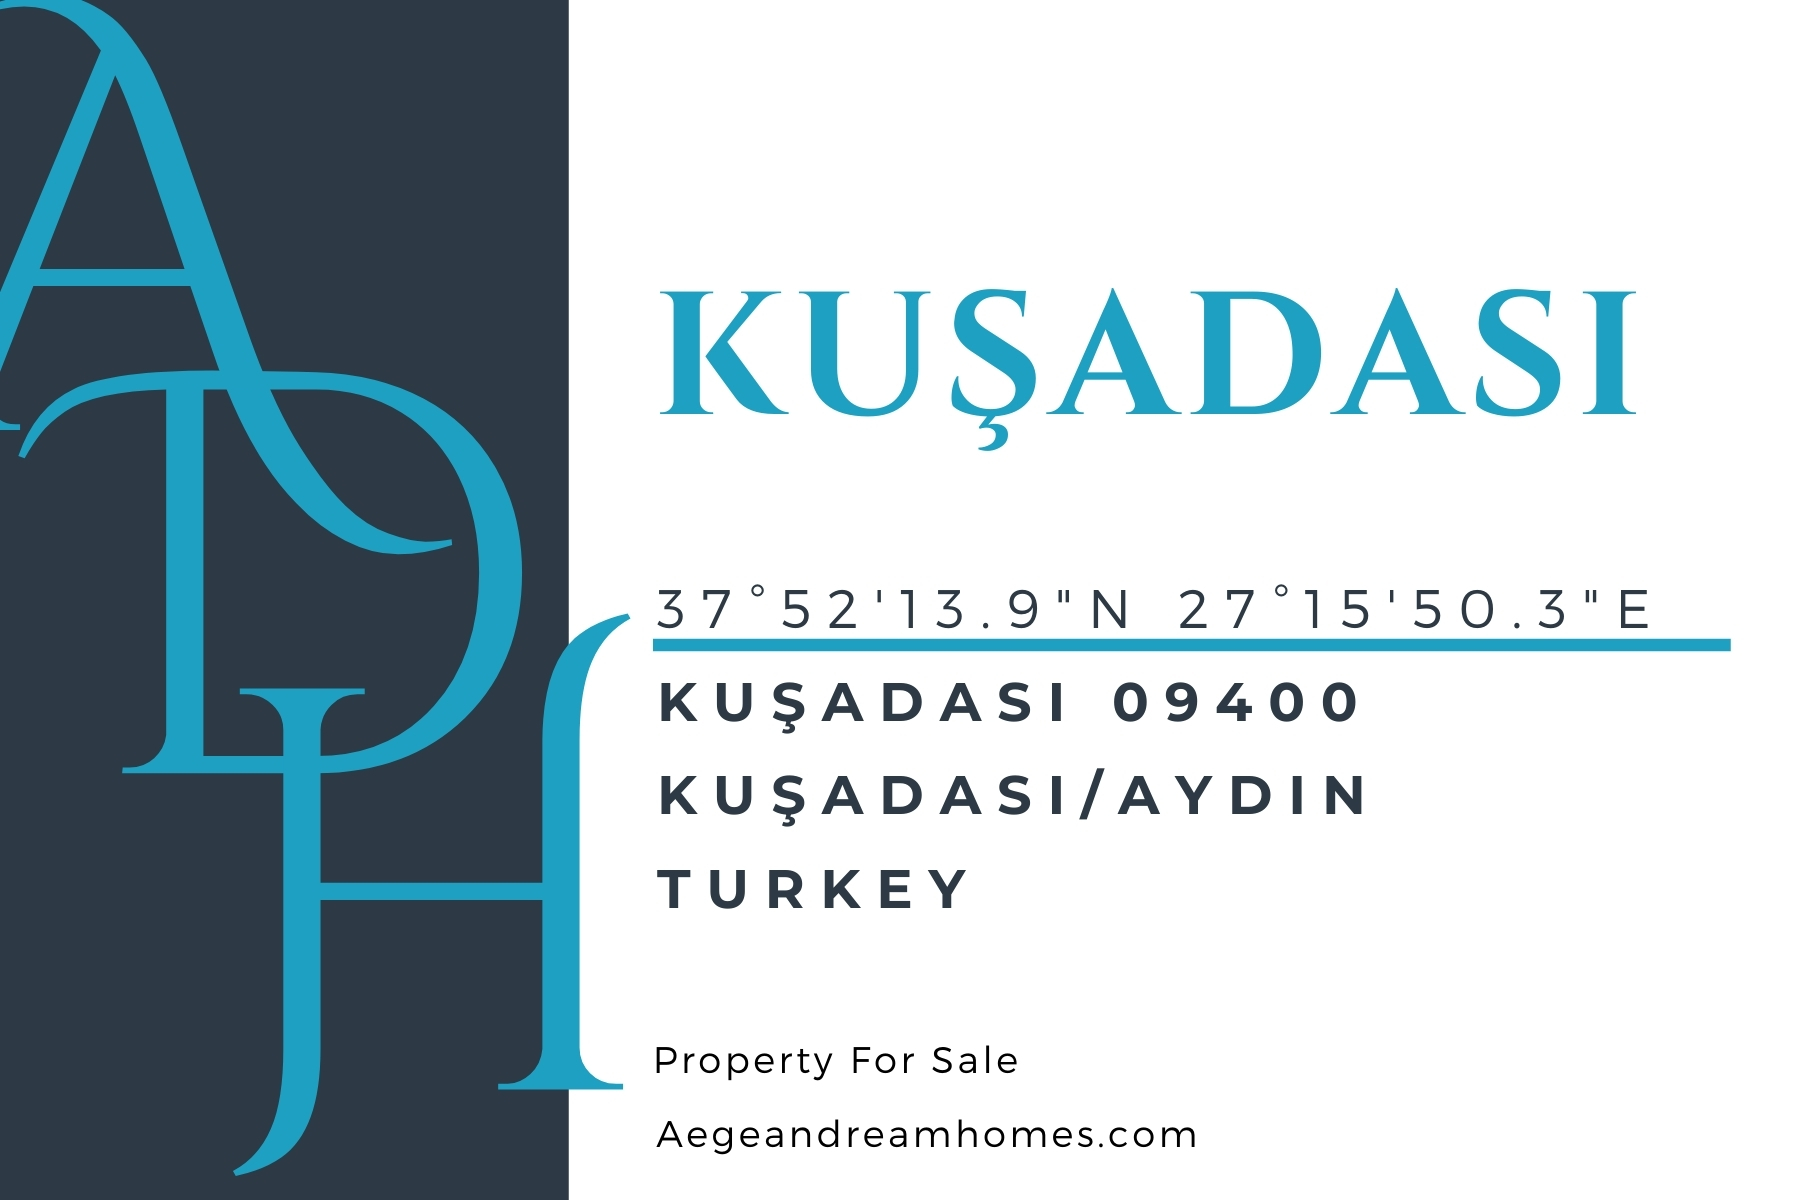 Kusadasi postcard. Includes Kusadasi address & coordinates. Text reads: Kusadasi property for sale.